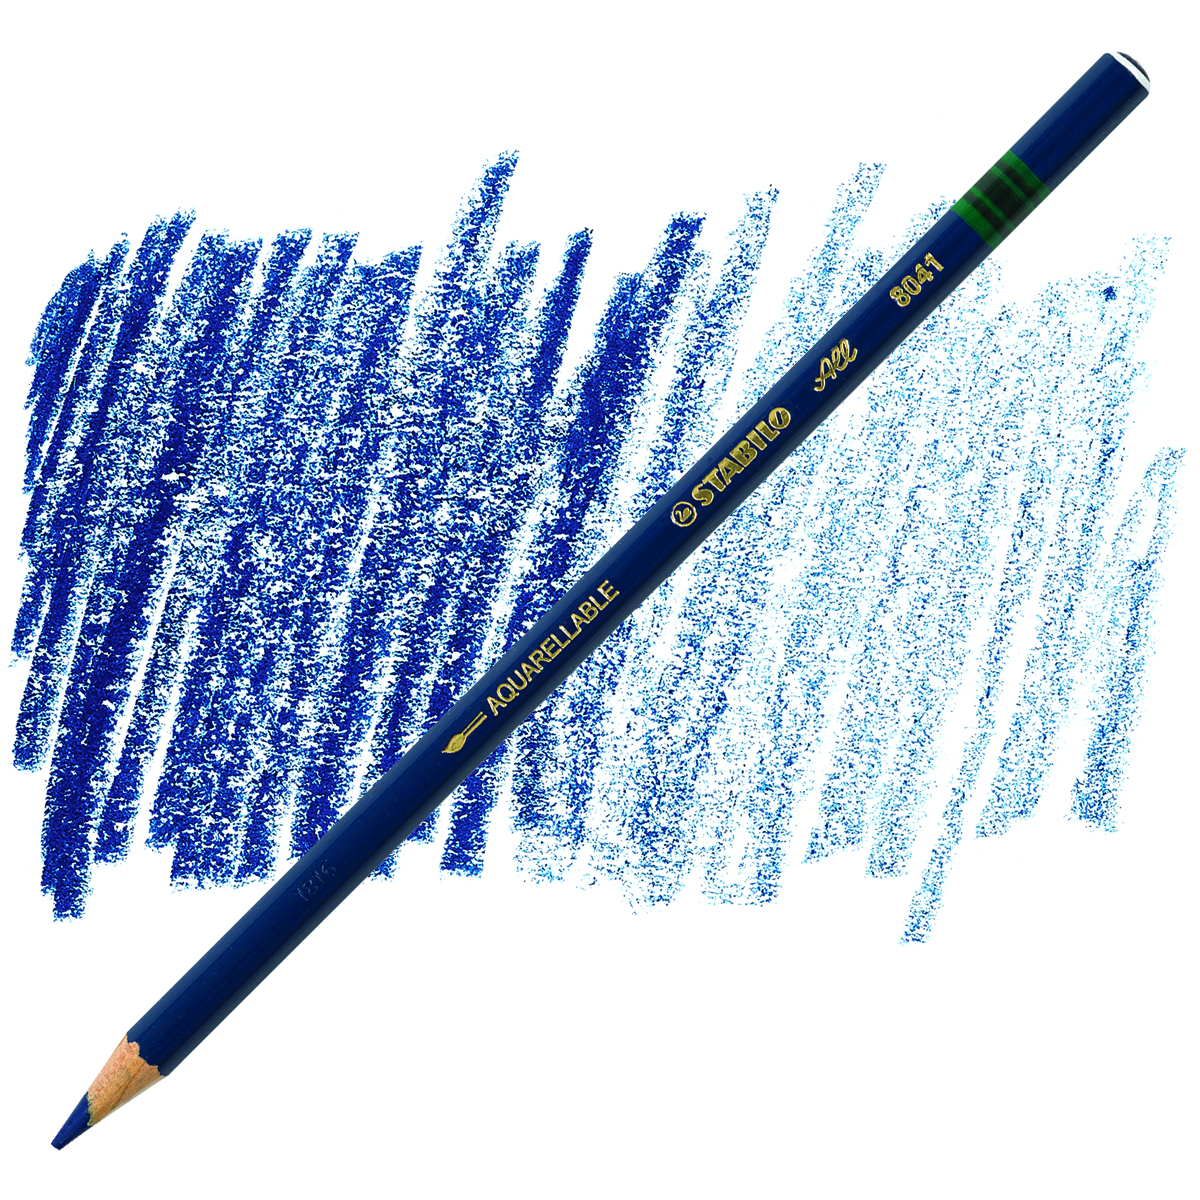 STABILO All-STABILO Colored Pencil For Film & Glass, White - Sam Flax  Atlanta